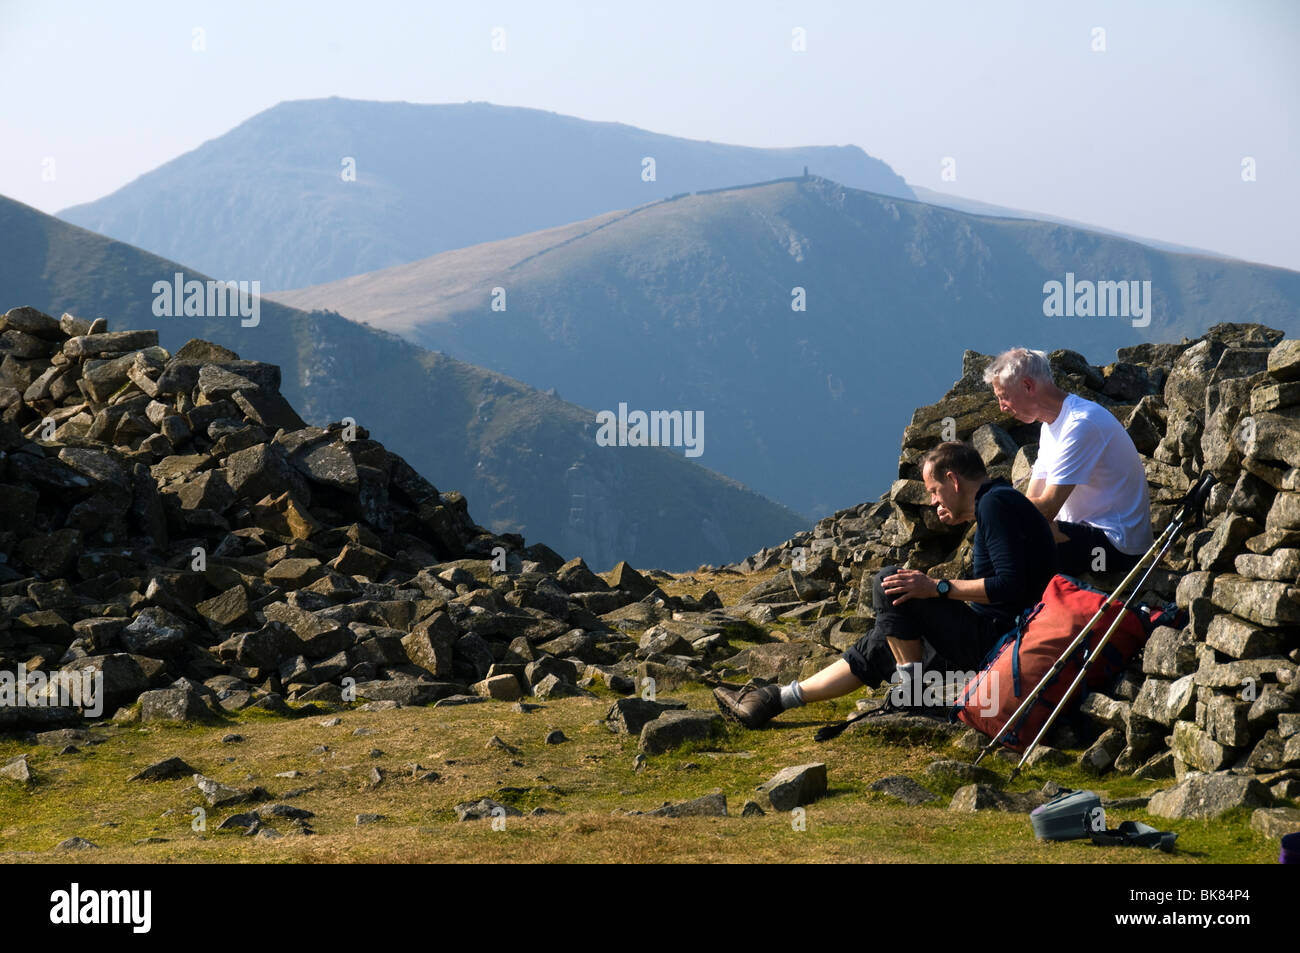 Craig Cwm Silyn and Mynydd Tal-y-mignedd from the summit of Y Garn, Nantlle Ridge, Snowdonia, North Wales, UK Stock Photo